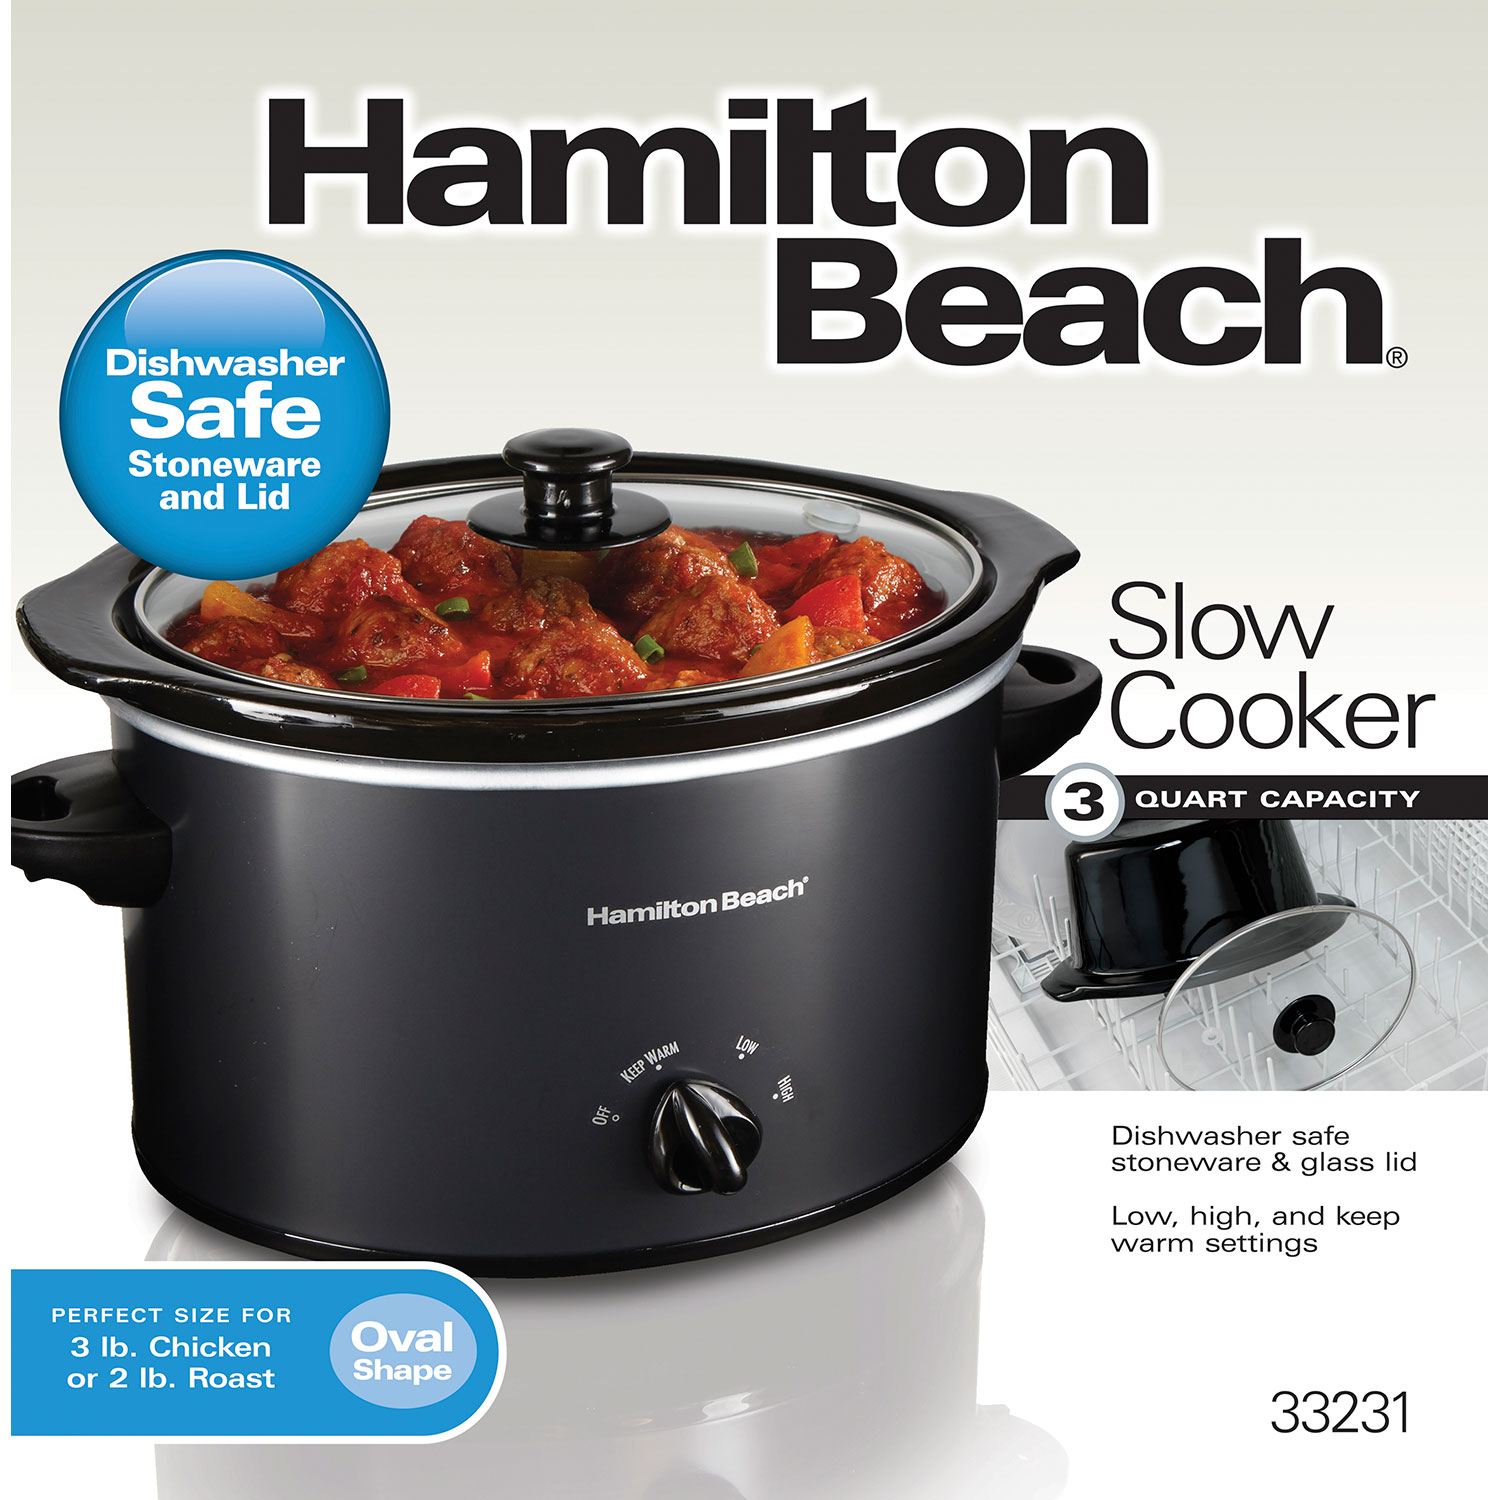 Hamilton Beach 3 Quart Slow Cooker, Matte Black - 33231